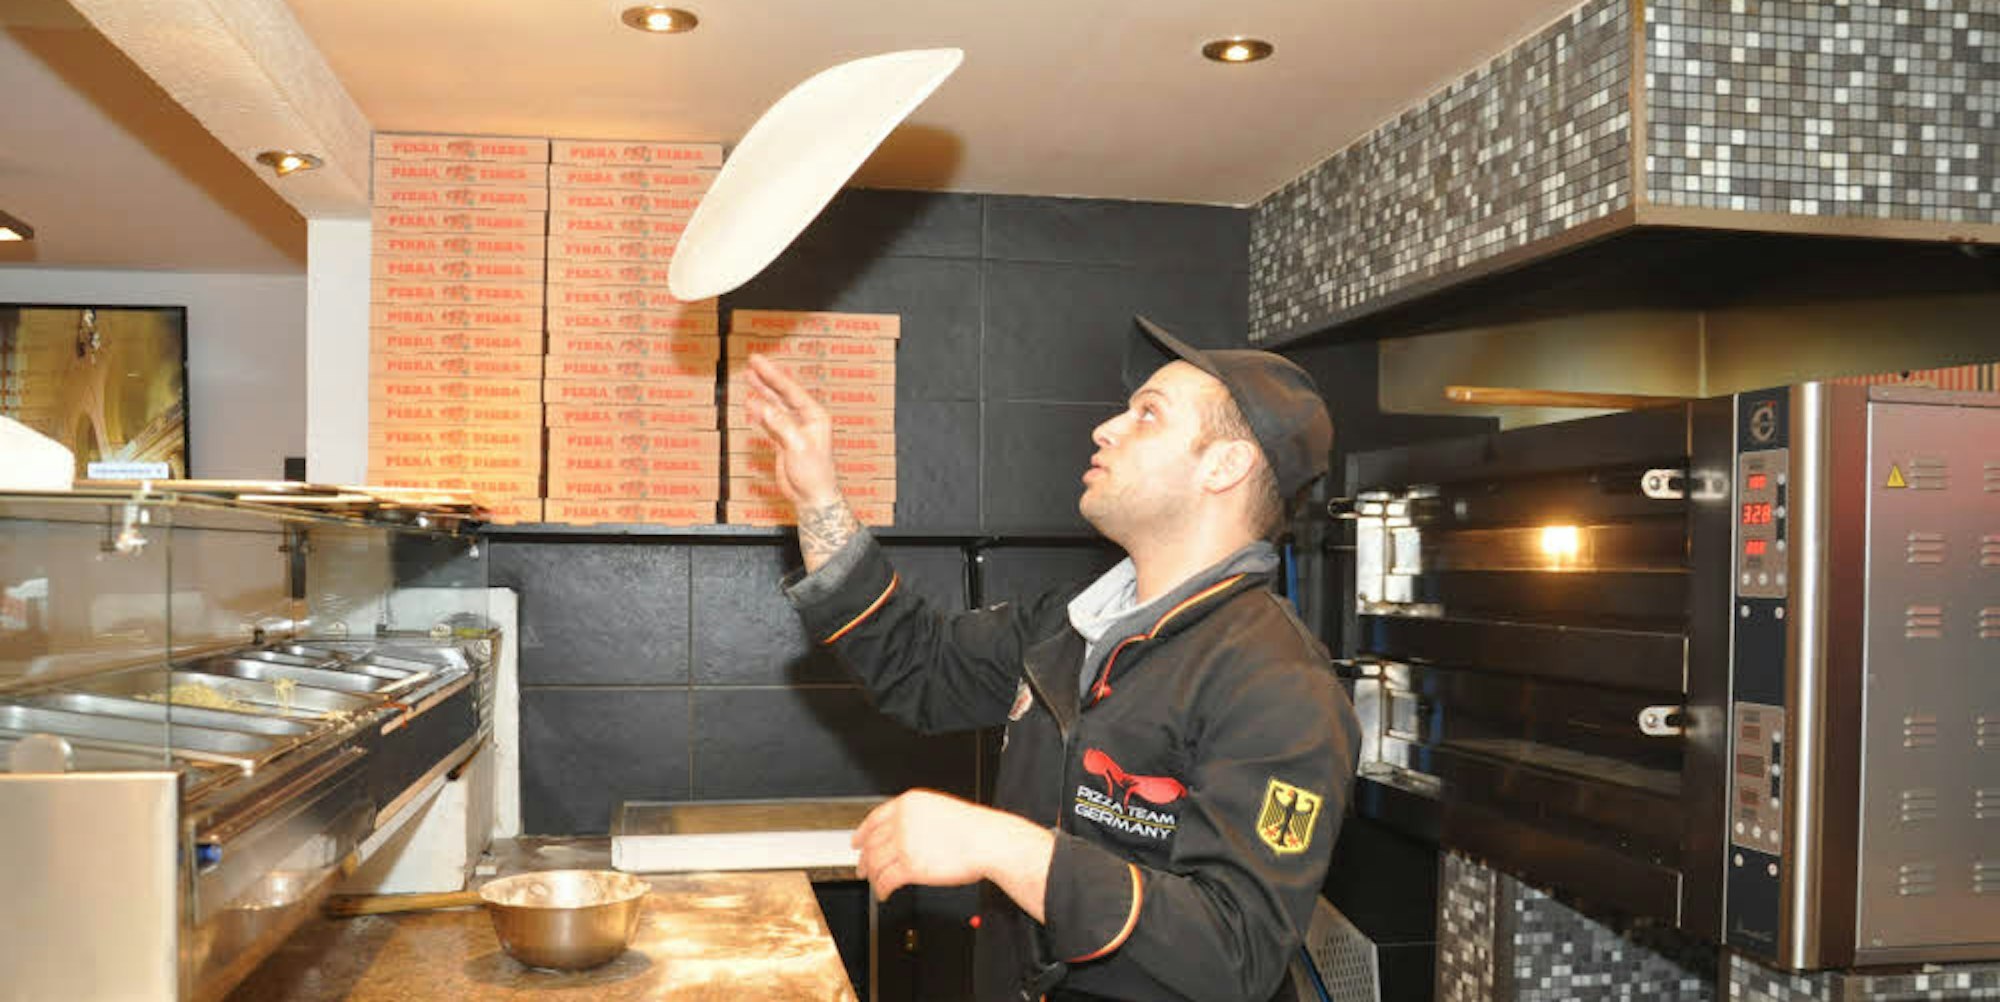 Kunststücke werden bei der Pizza-WM nicht bewertet, obwohl Luigi Carpineta sie als erfahrener Pizzaiolo natürlich aus dem Handgelenk beherrscht.